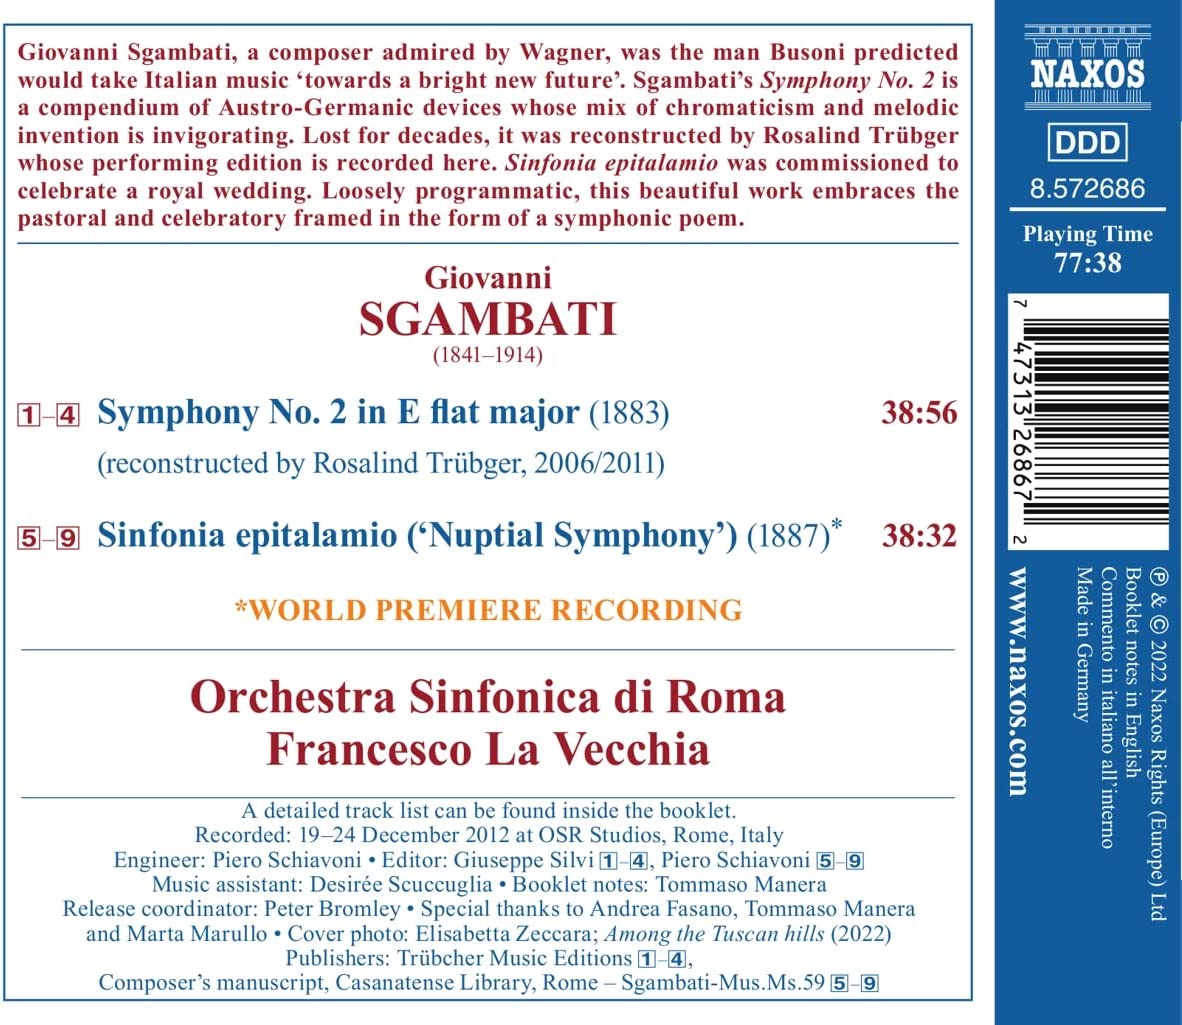 Francesco La Vecchia 스감바티: 교향곡 2번, 결혼 교향곡 (Giovanni Sgambati: Symphony No.2, Sinfonia Epitalamio)